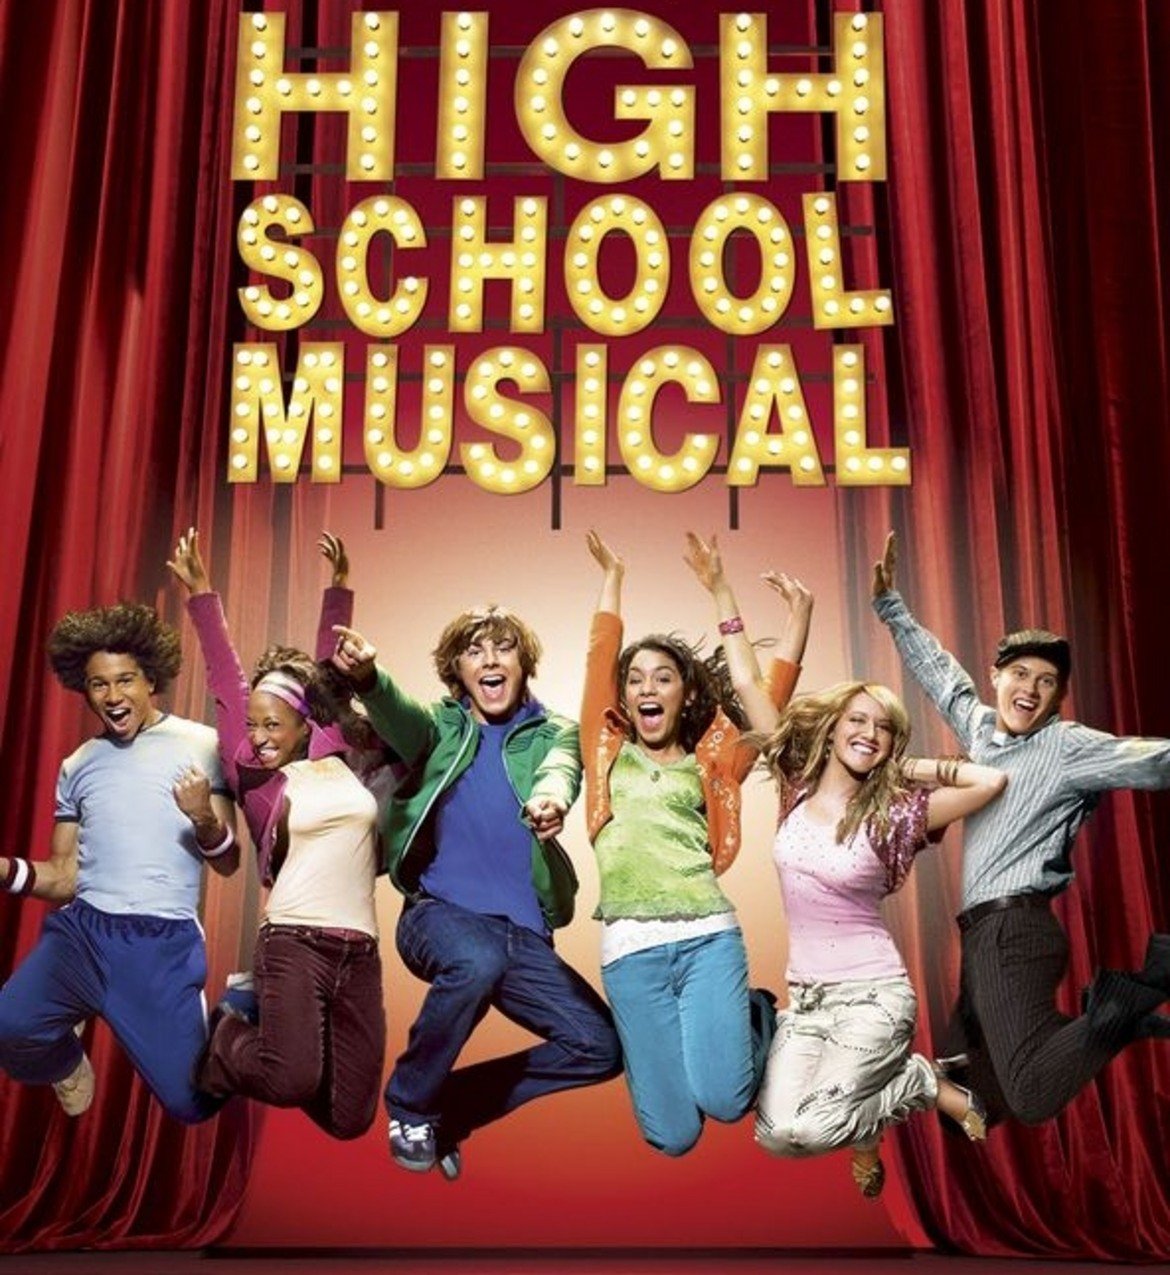 ...както и нов сериал "High School Musical", ориентиран към по-младите зрители.